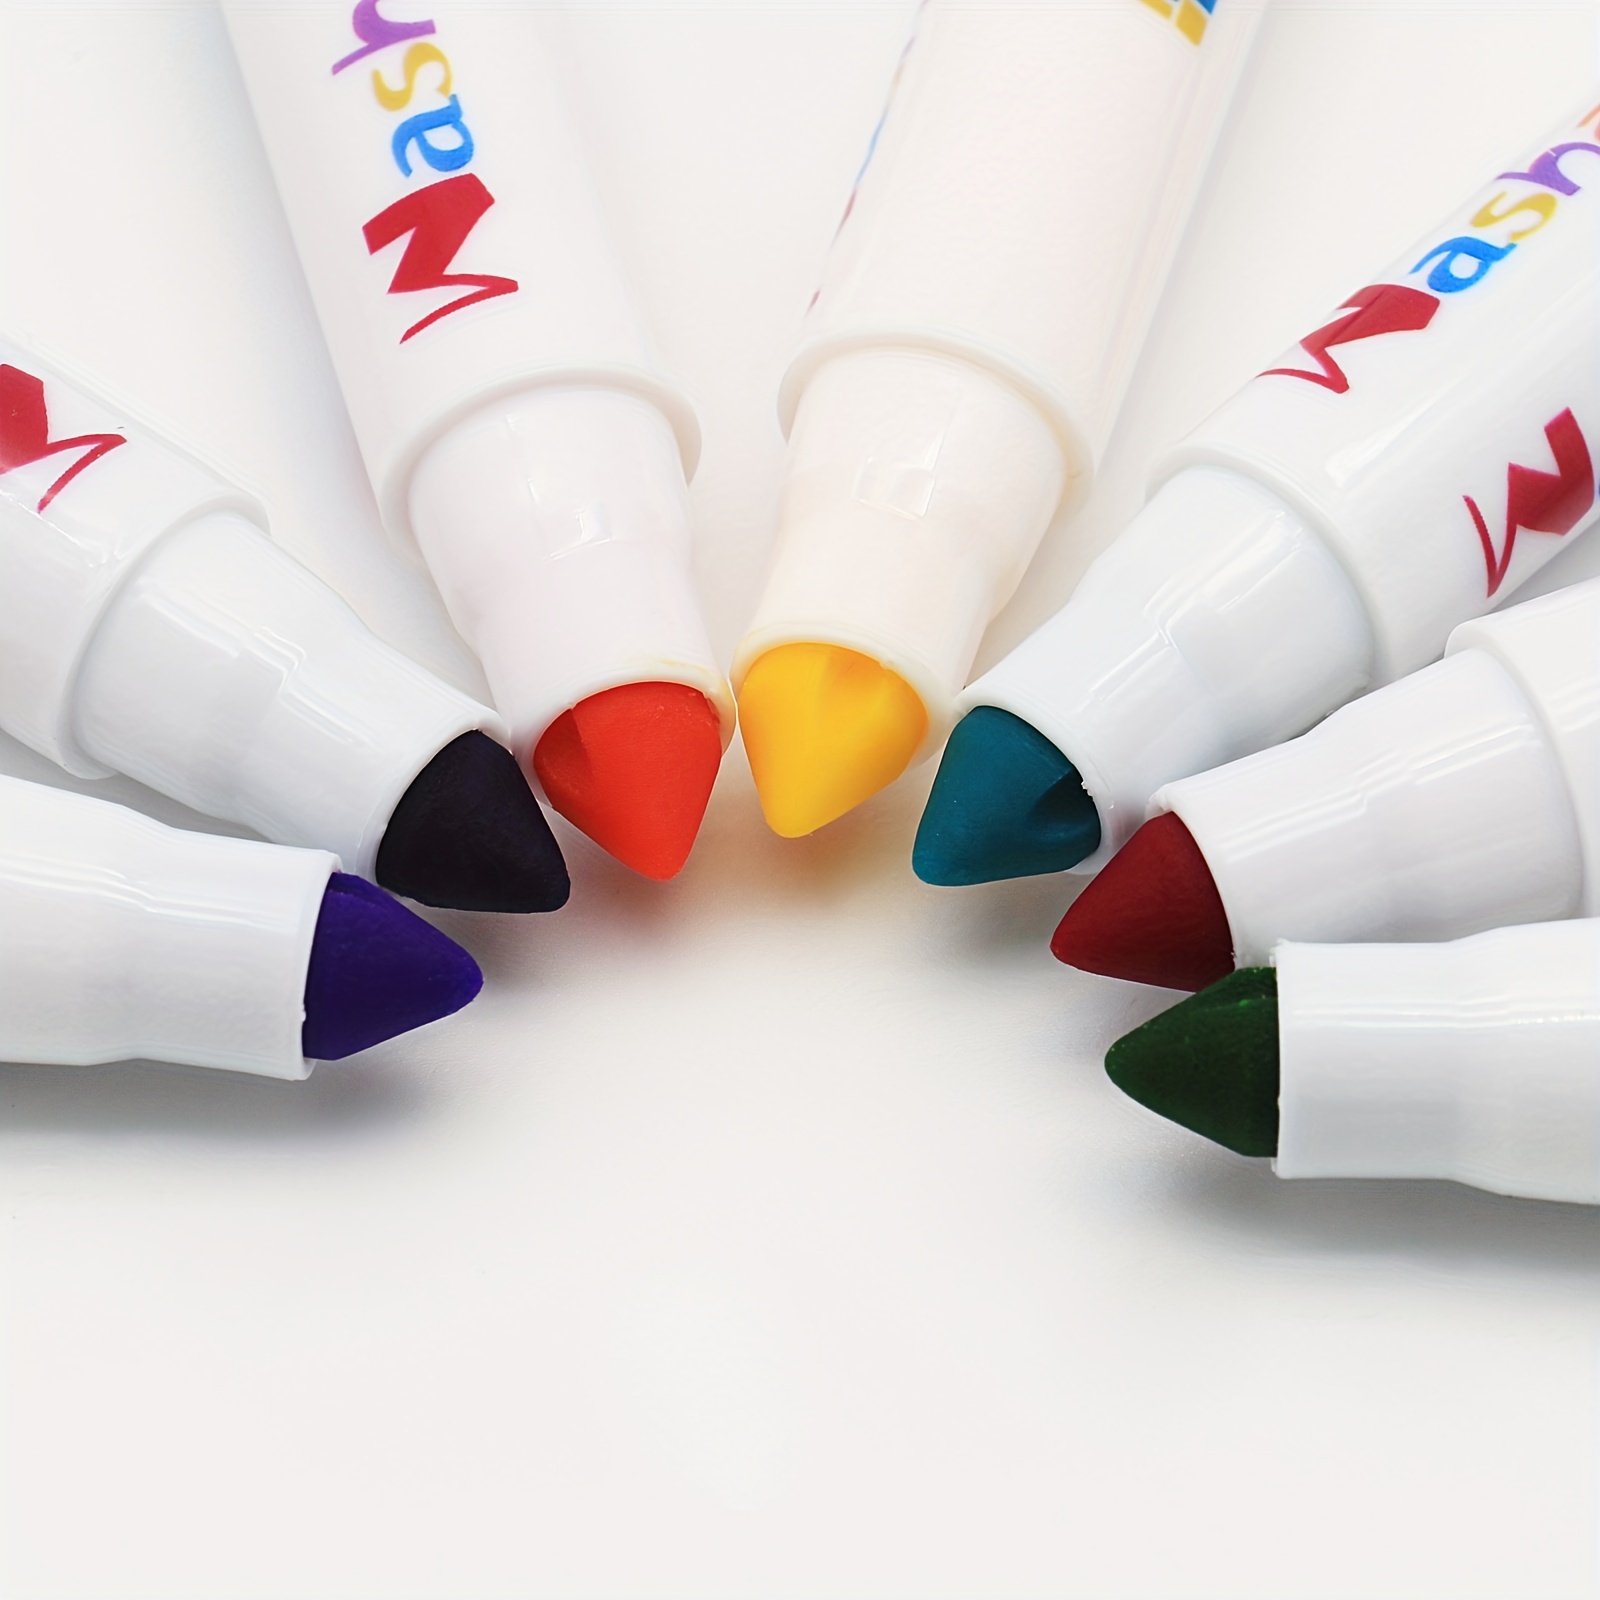 8 marcadores Posca de 3.3 ft, bolígrafos Posca para suministros de arte,  suministros escolares, arte rupestre, pintura de tela, marcadores de tela